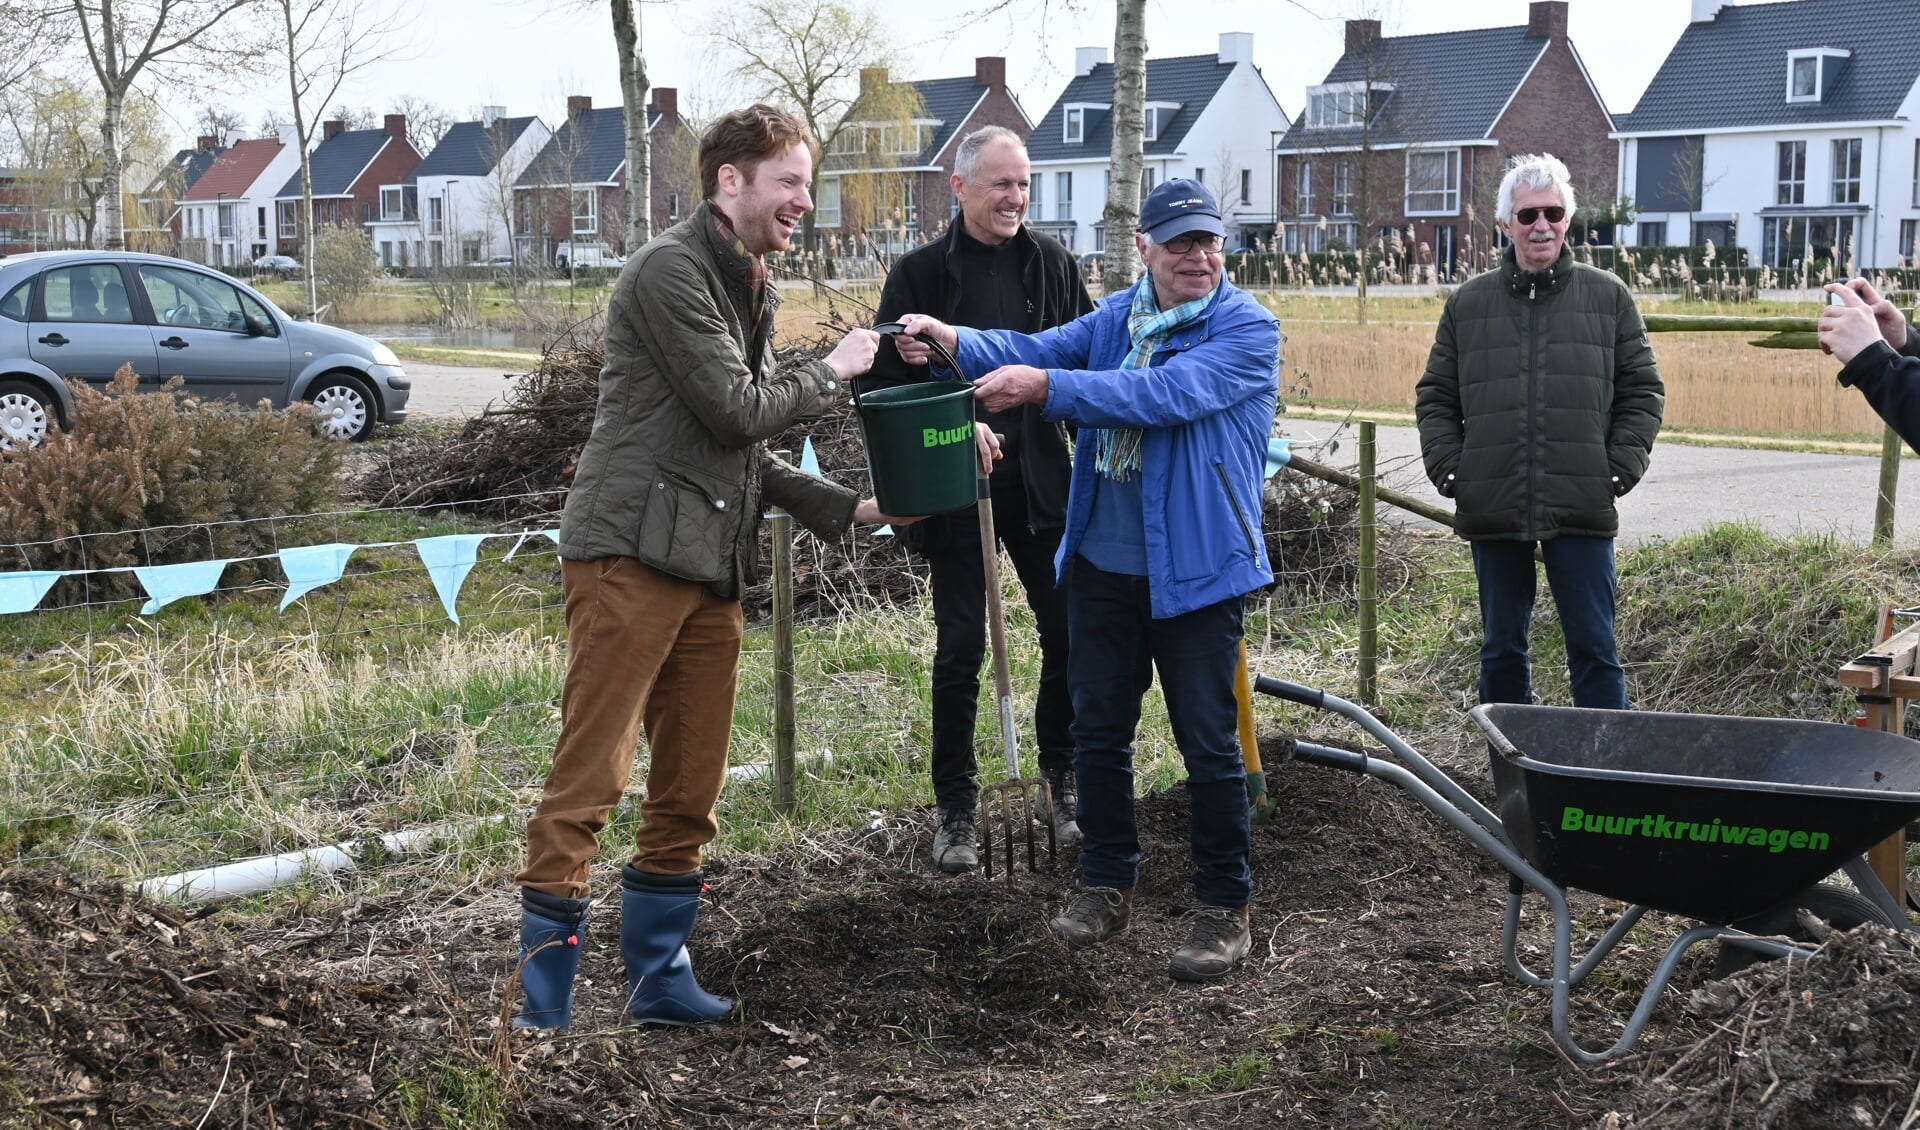 Burgemeester krijgt eerste compost van Peter van Dijk